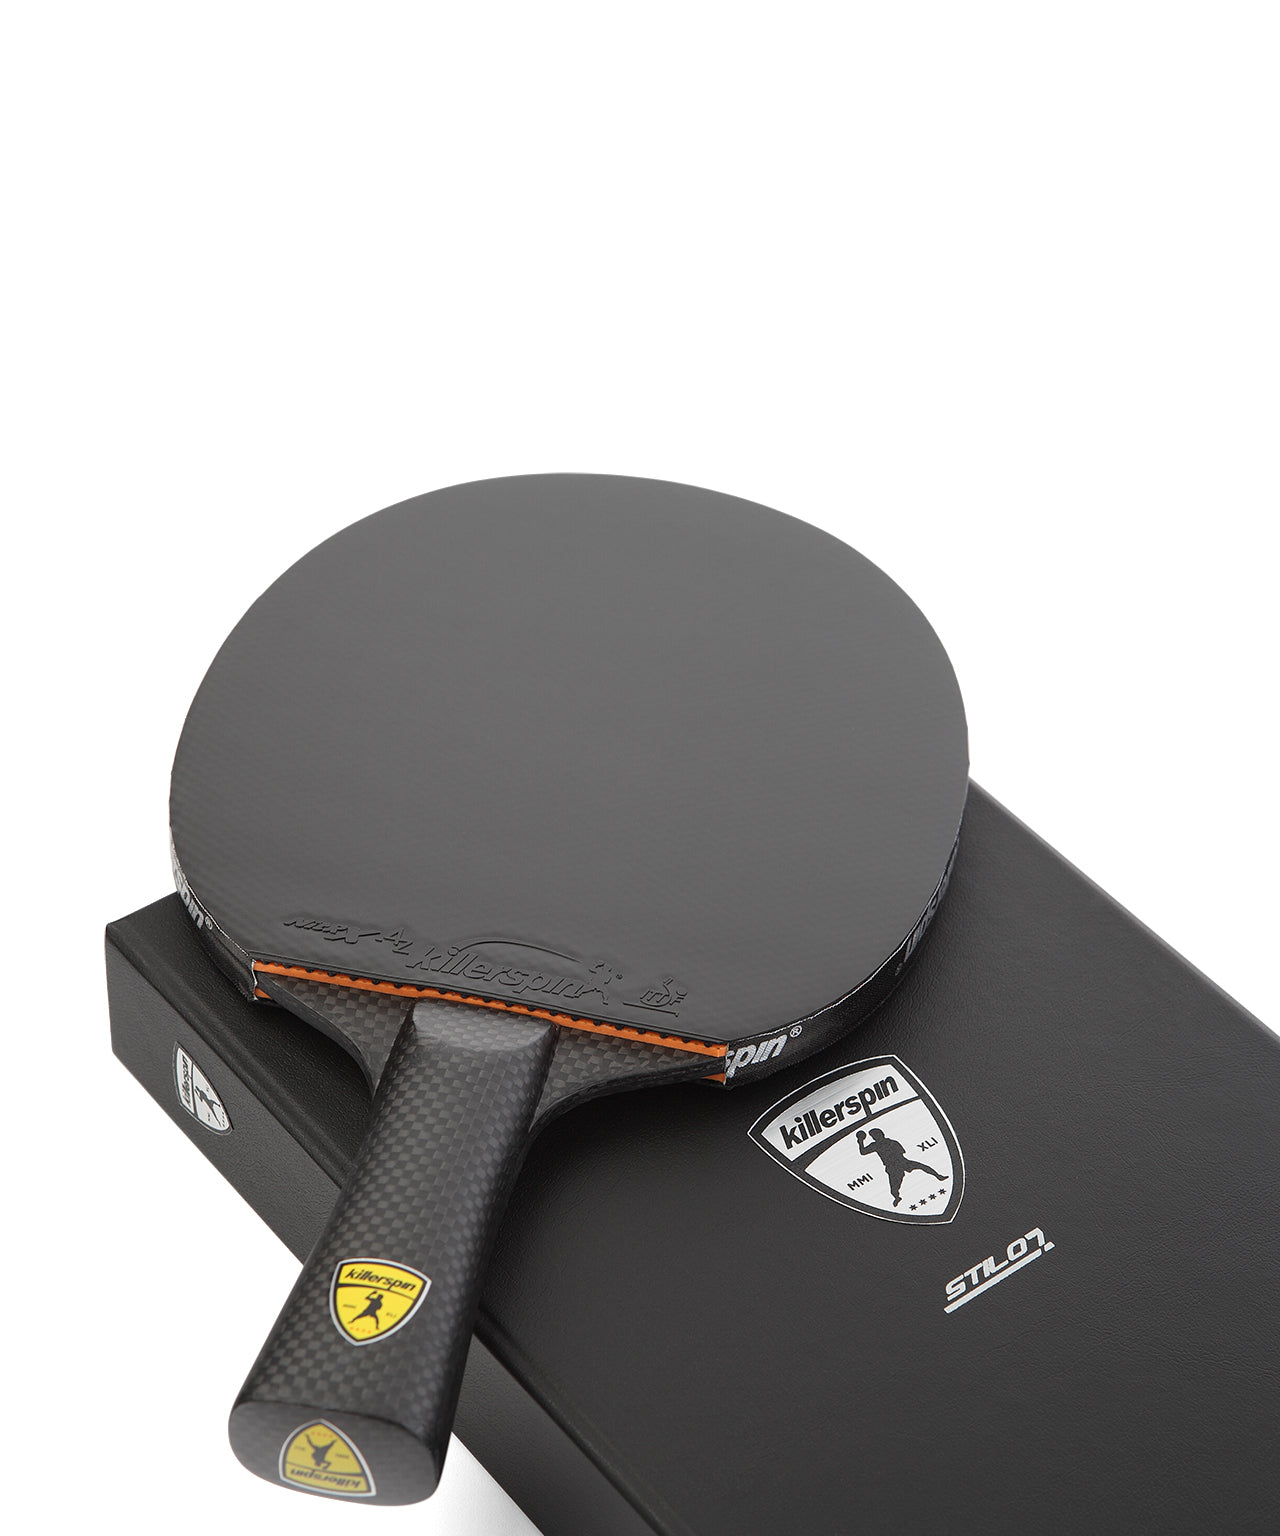 Killerspin SVR Ping Pong Paddle Stilo7 SVR - Handle